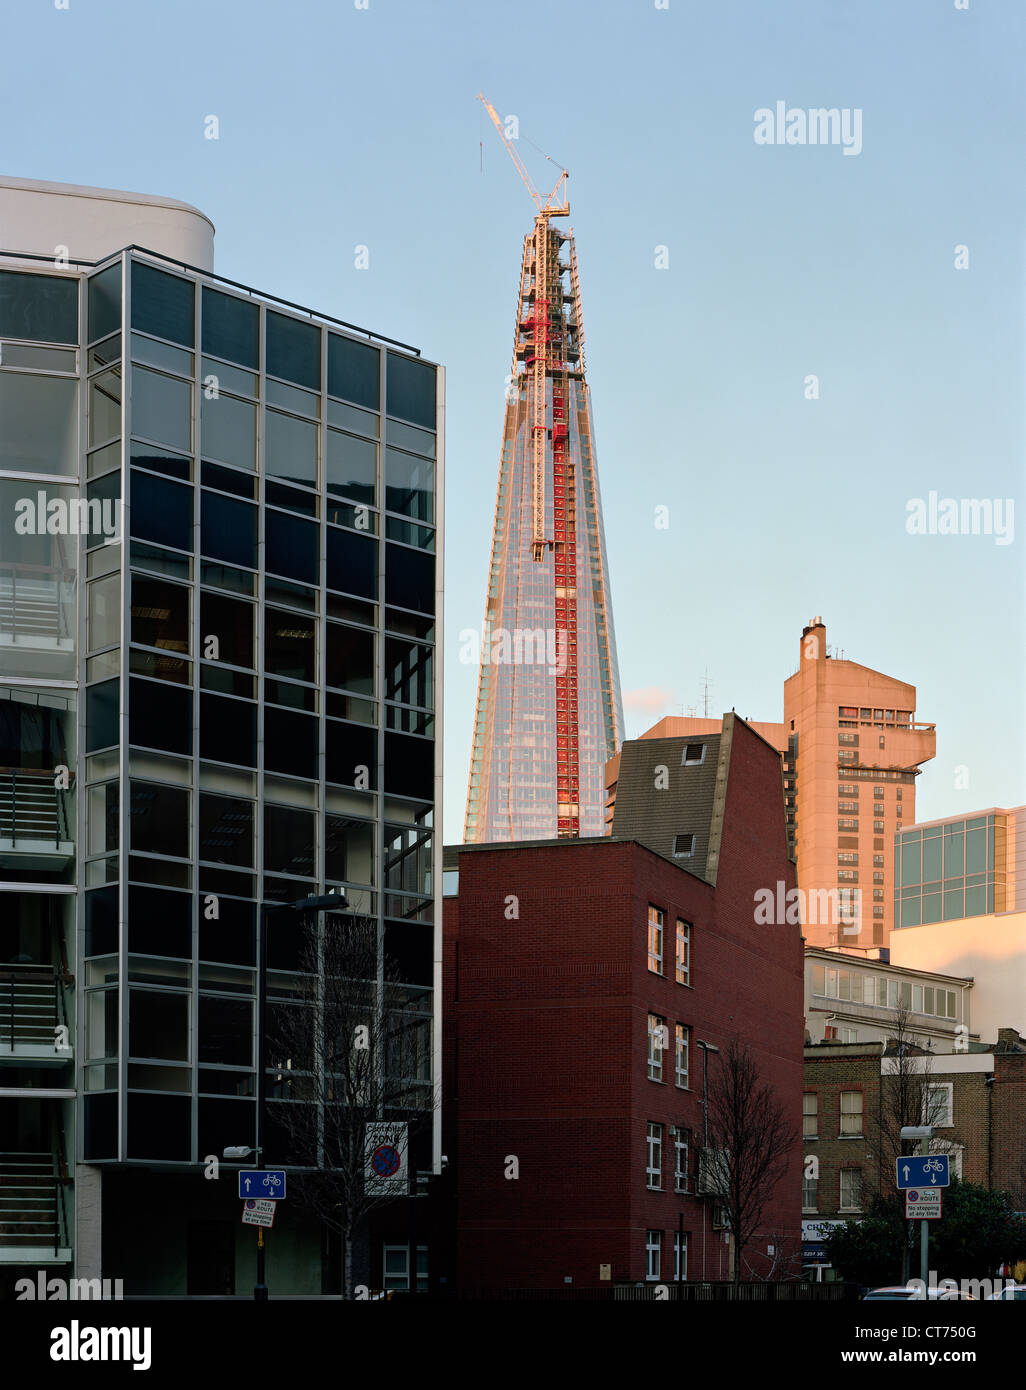 Shard, Londra, Regno Unito. Architetto: Renzo Piano Building Workshop, 2012. Tramonto in inverno con toni caldi. Vista dal grande fare Foto Stock